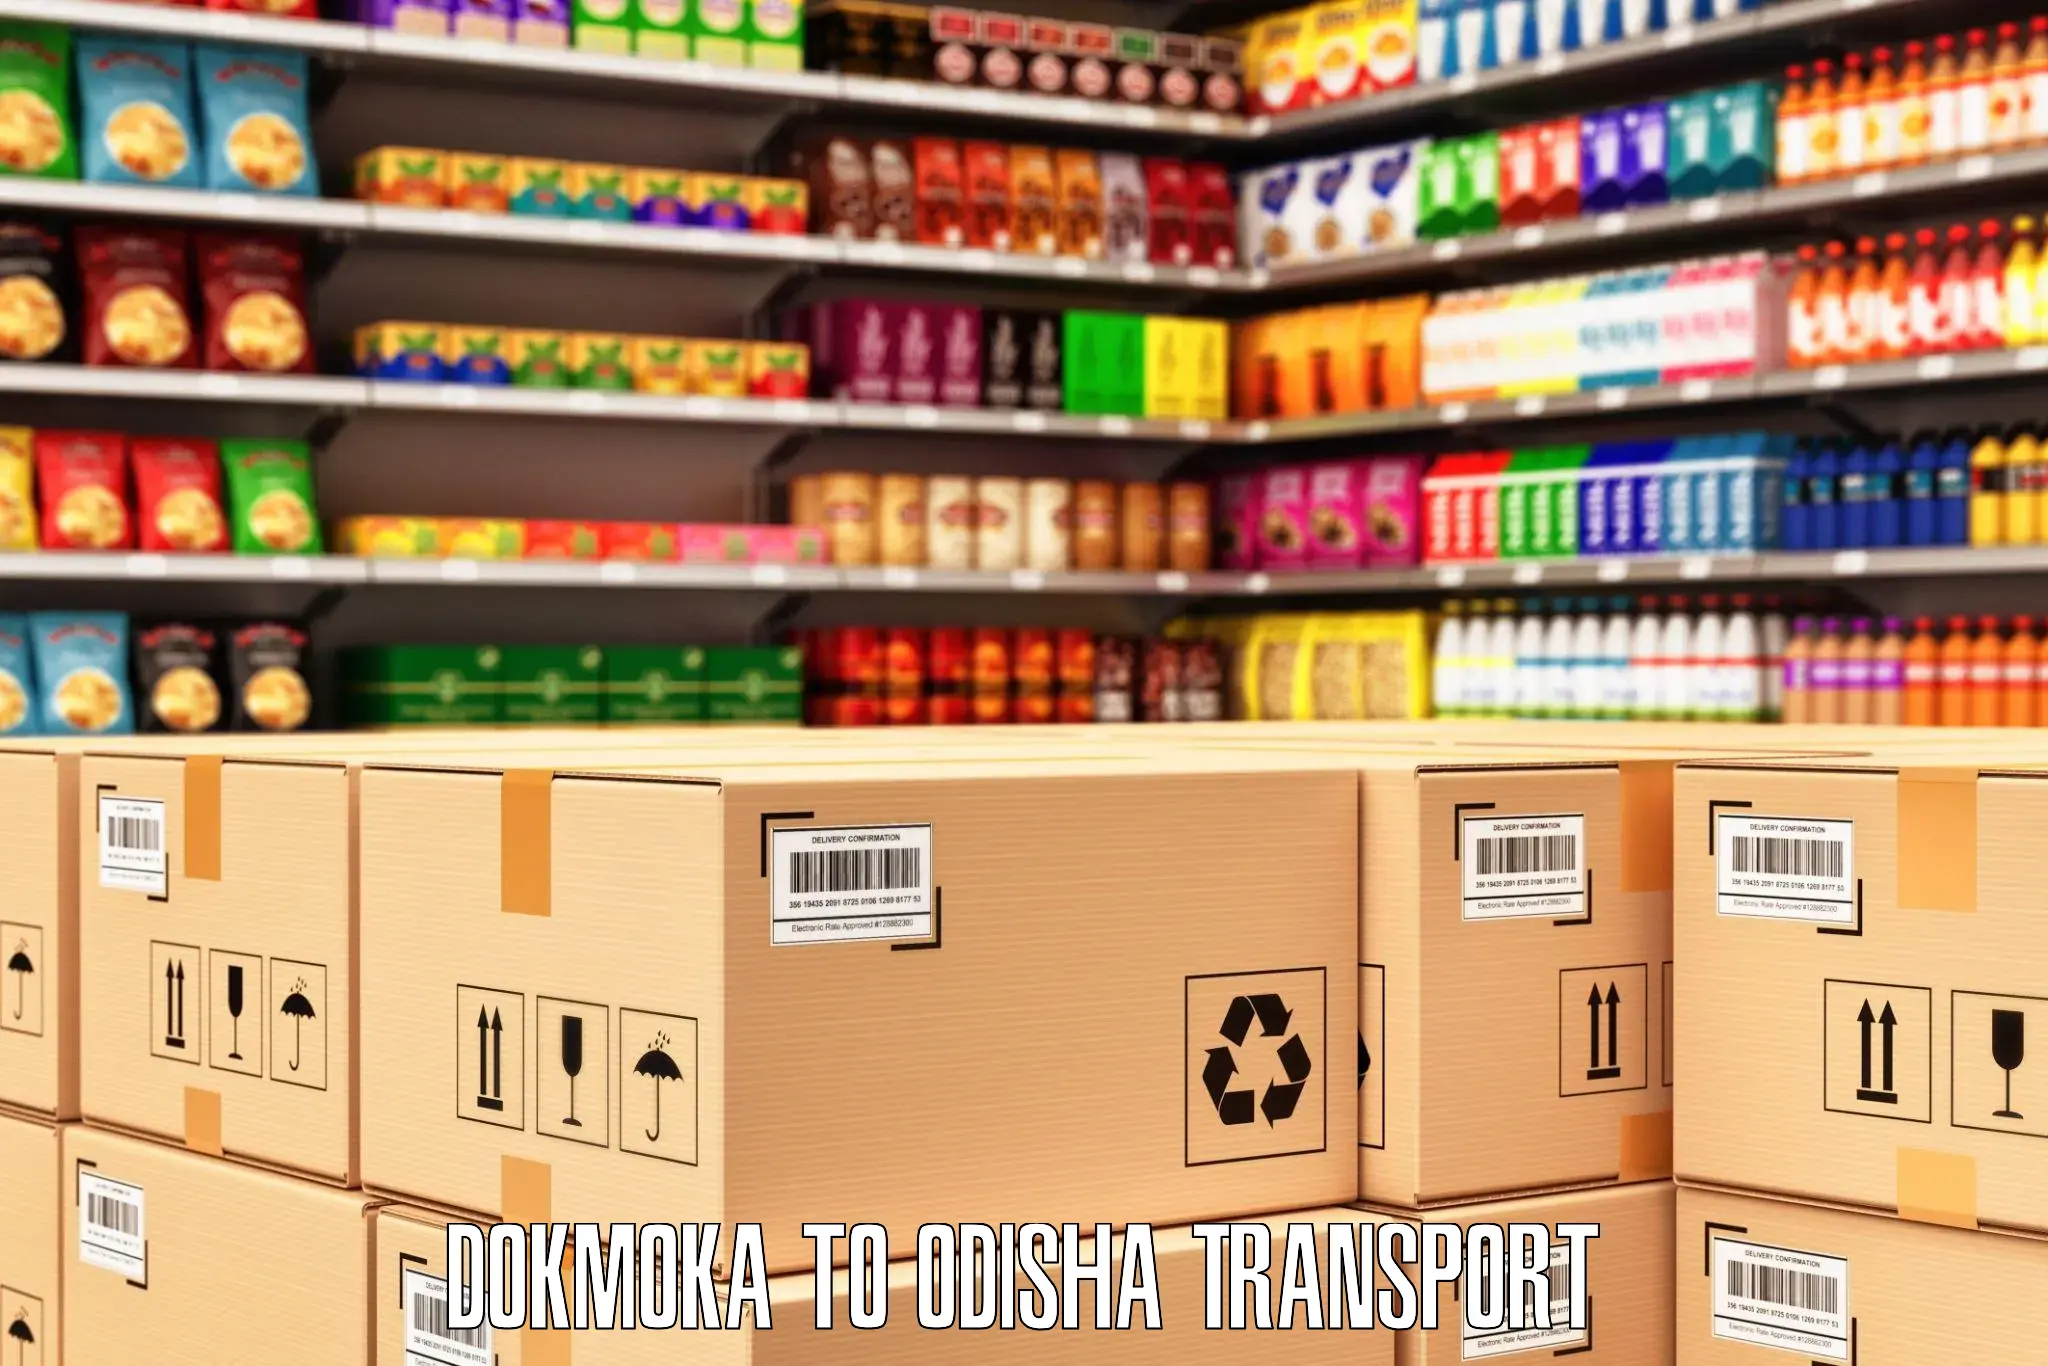 Vehicle parcel service Dokmoka to Ukhunda